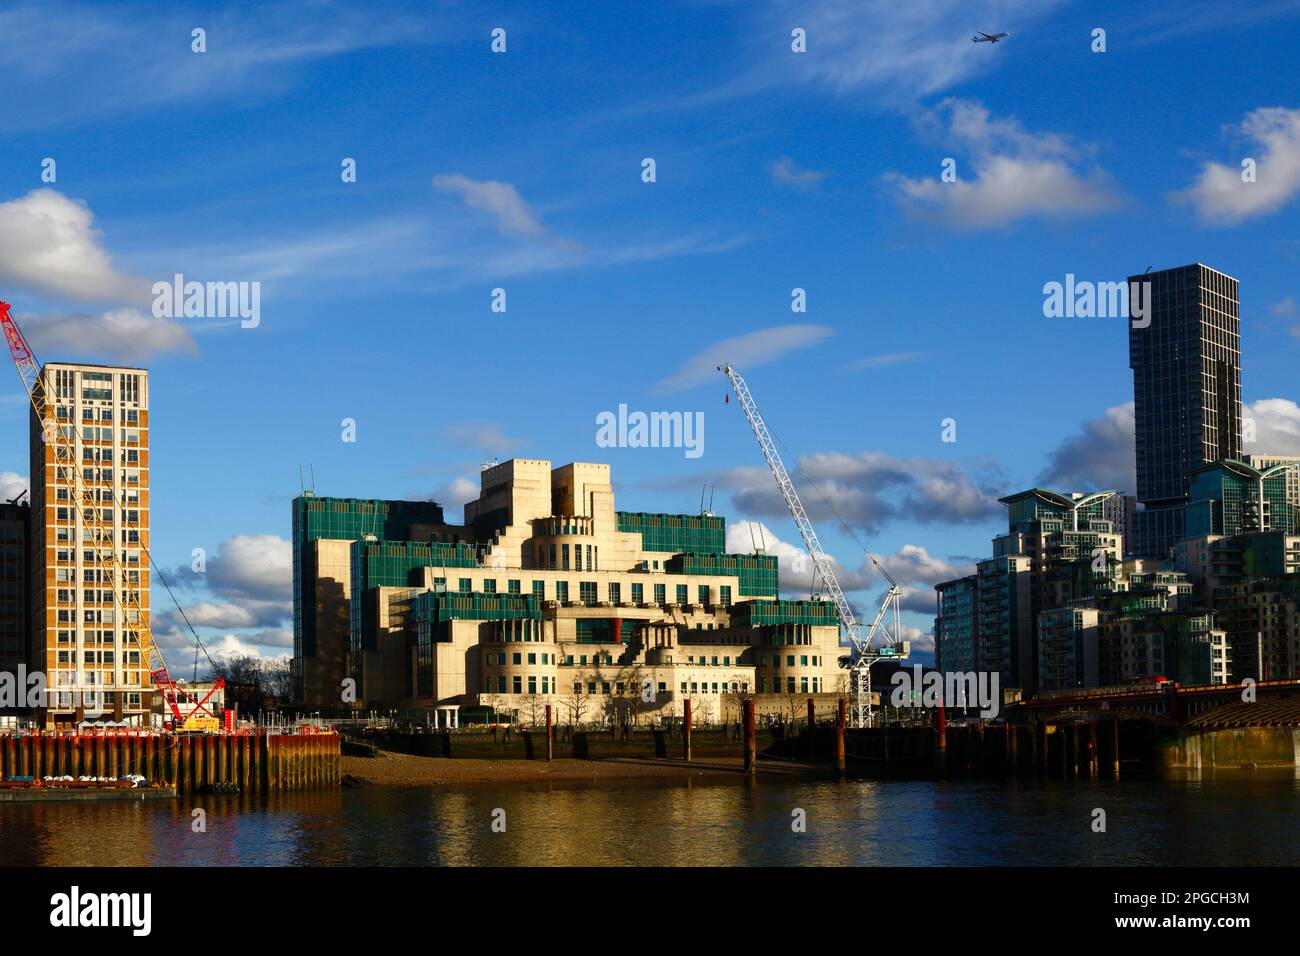 Vue sur la Tamise de Millbank à MI6 bâtiments et grues sur les sites de construction à proximité, Londres, Angleterre Banque D'Images